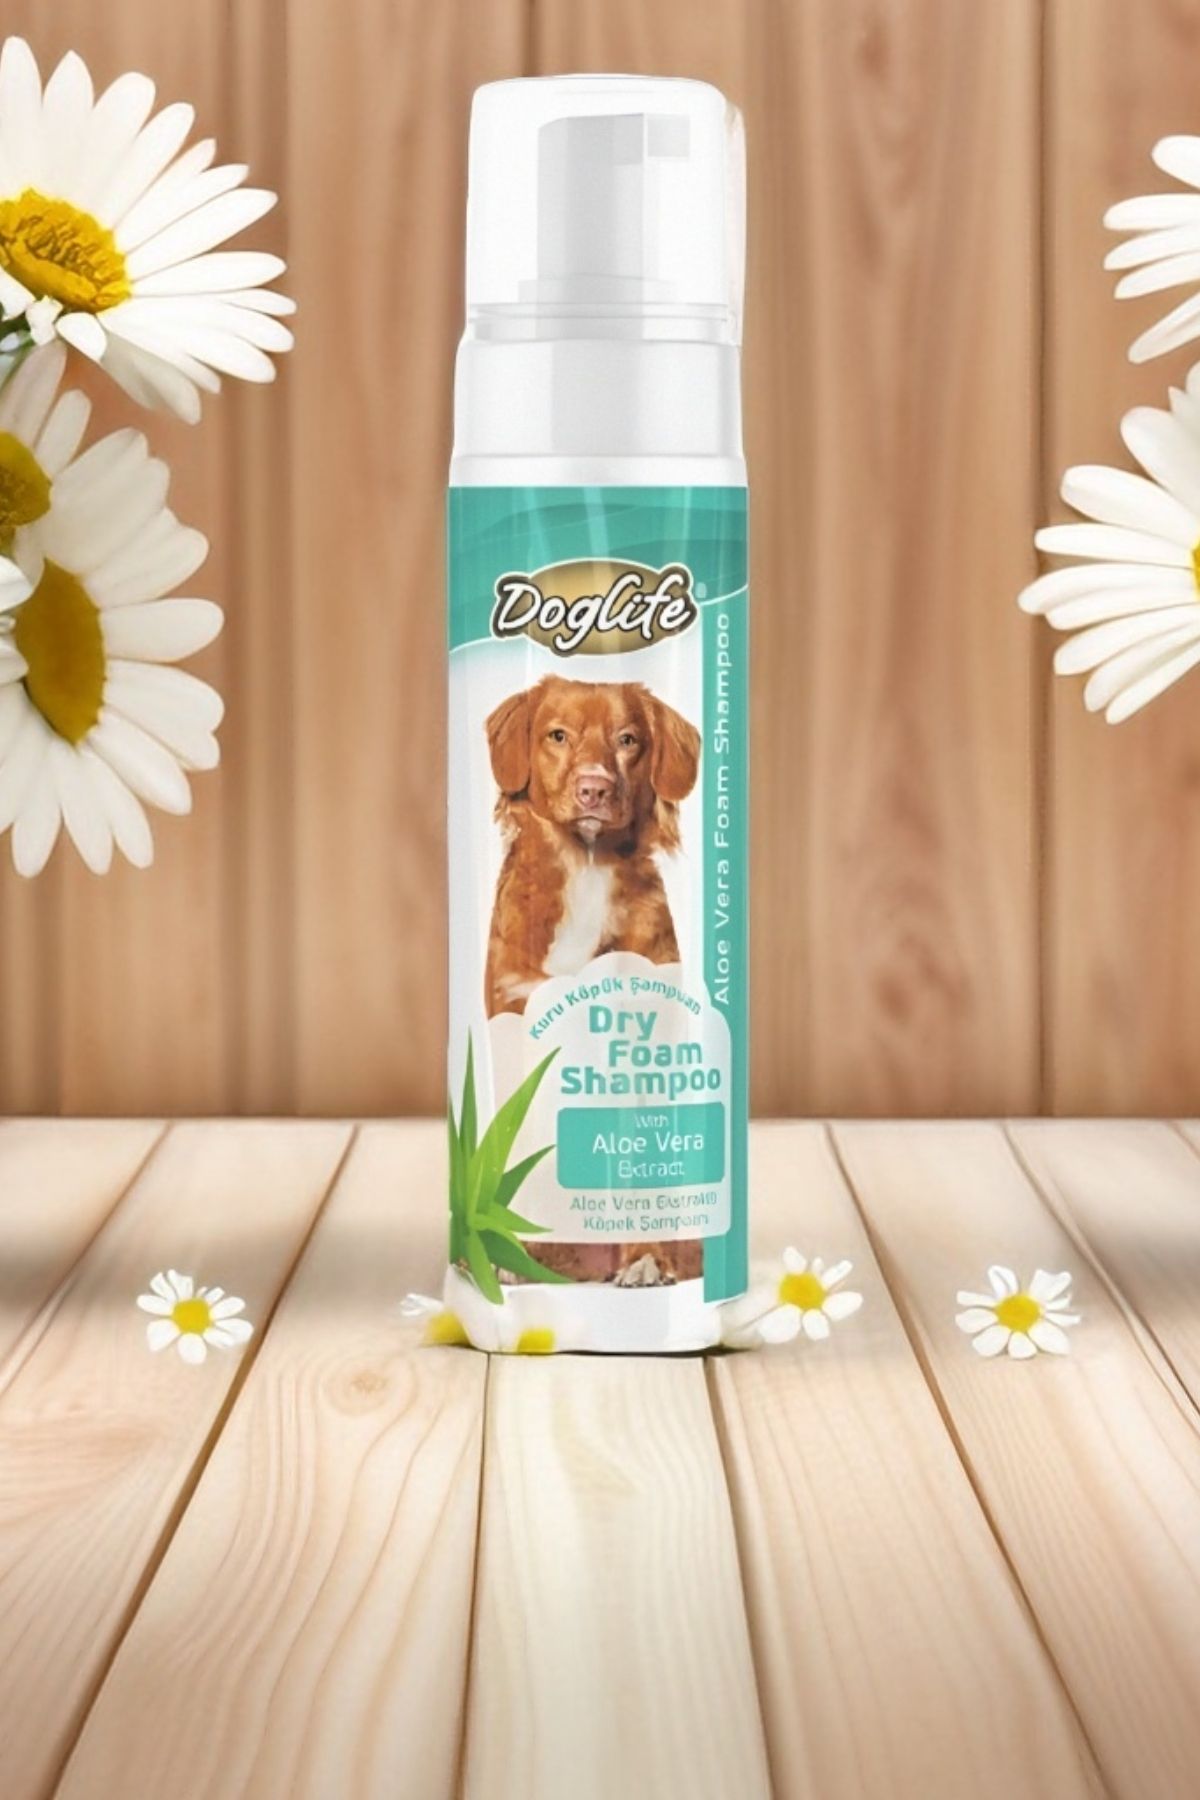 N NOXXO Dog Life Aloe Vera Köpek Şampuanı Kuru Yıkama Köpük Şampuan 200 ml